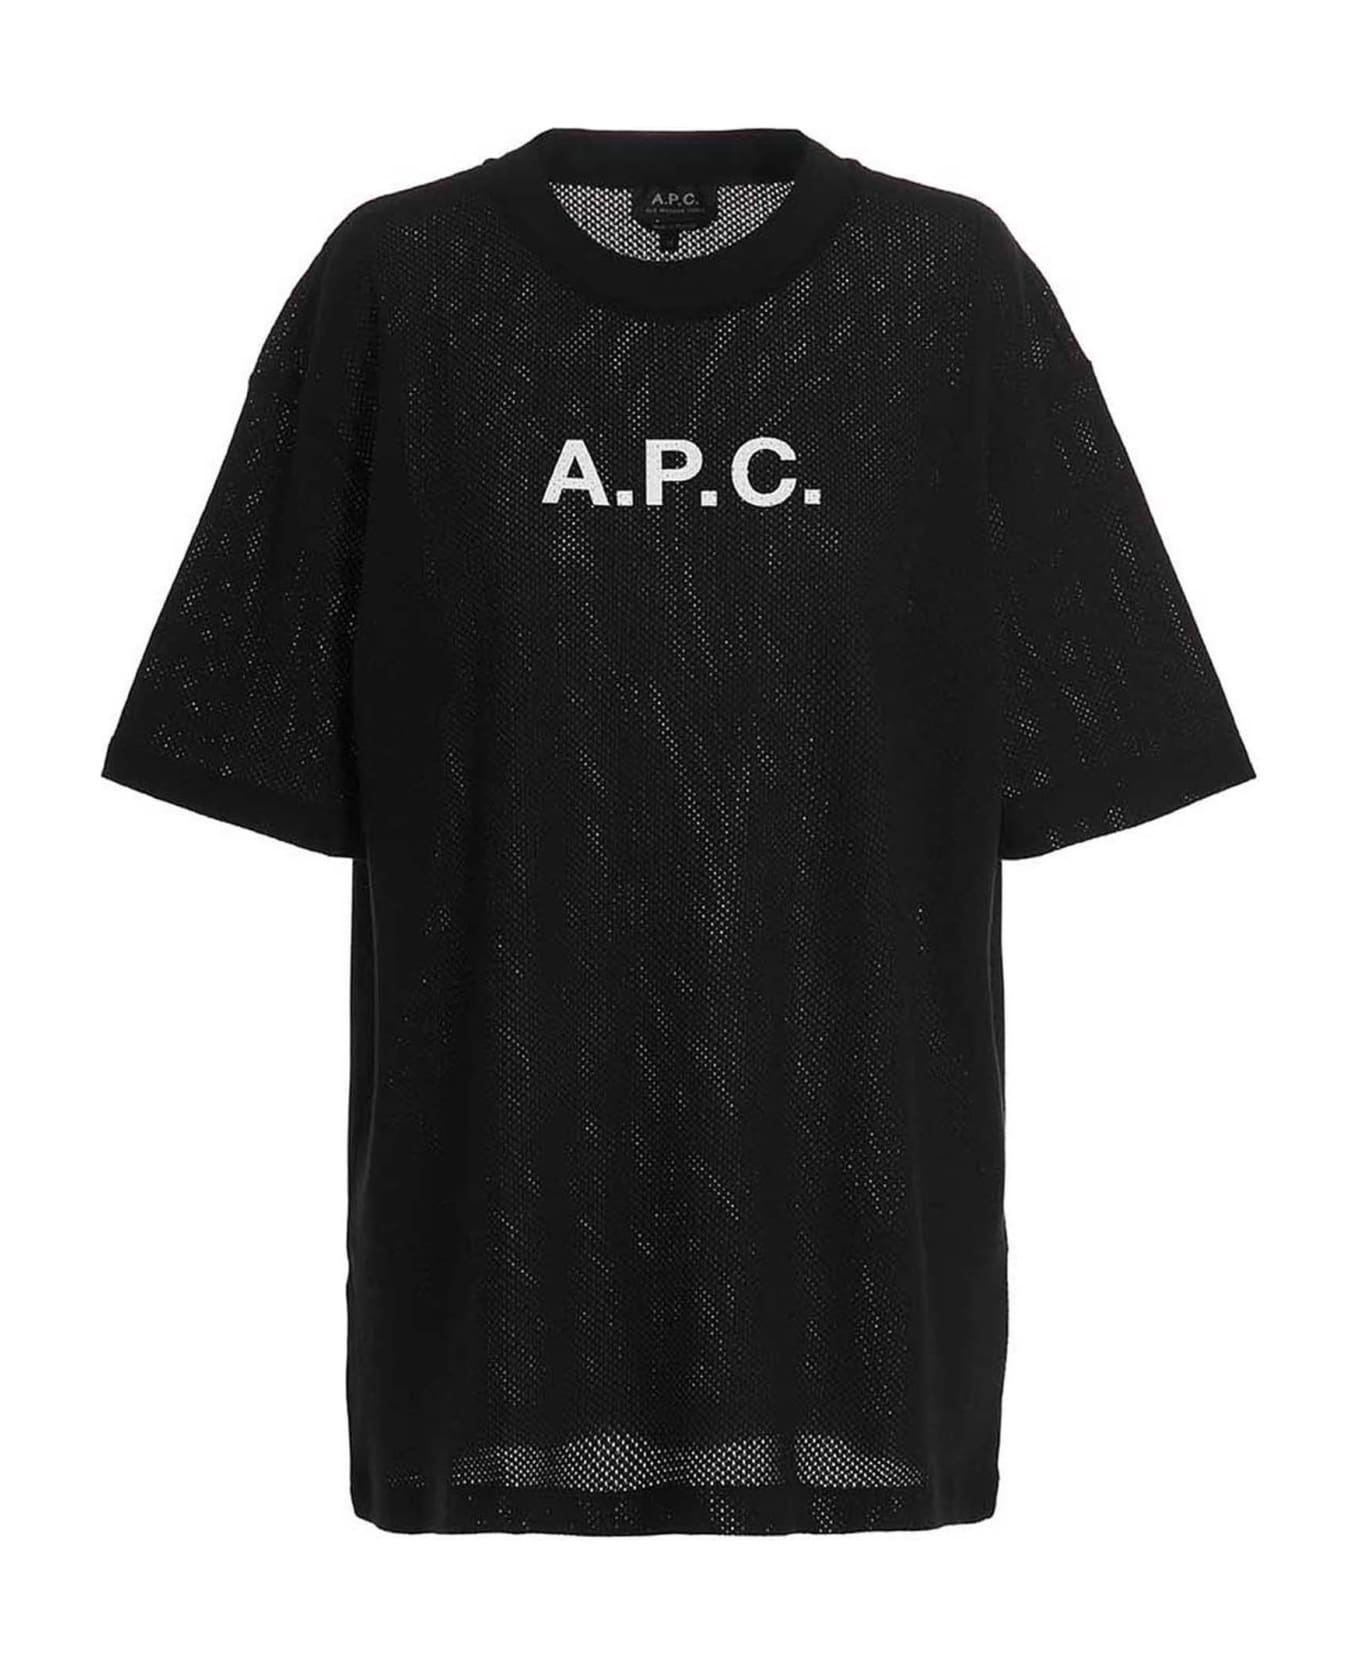 A.P.C. Moran T-shirt - Black